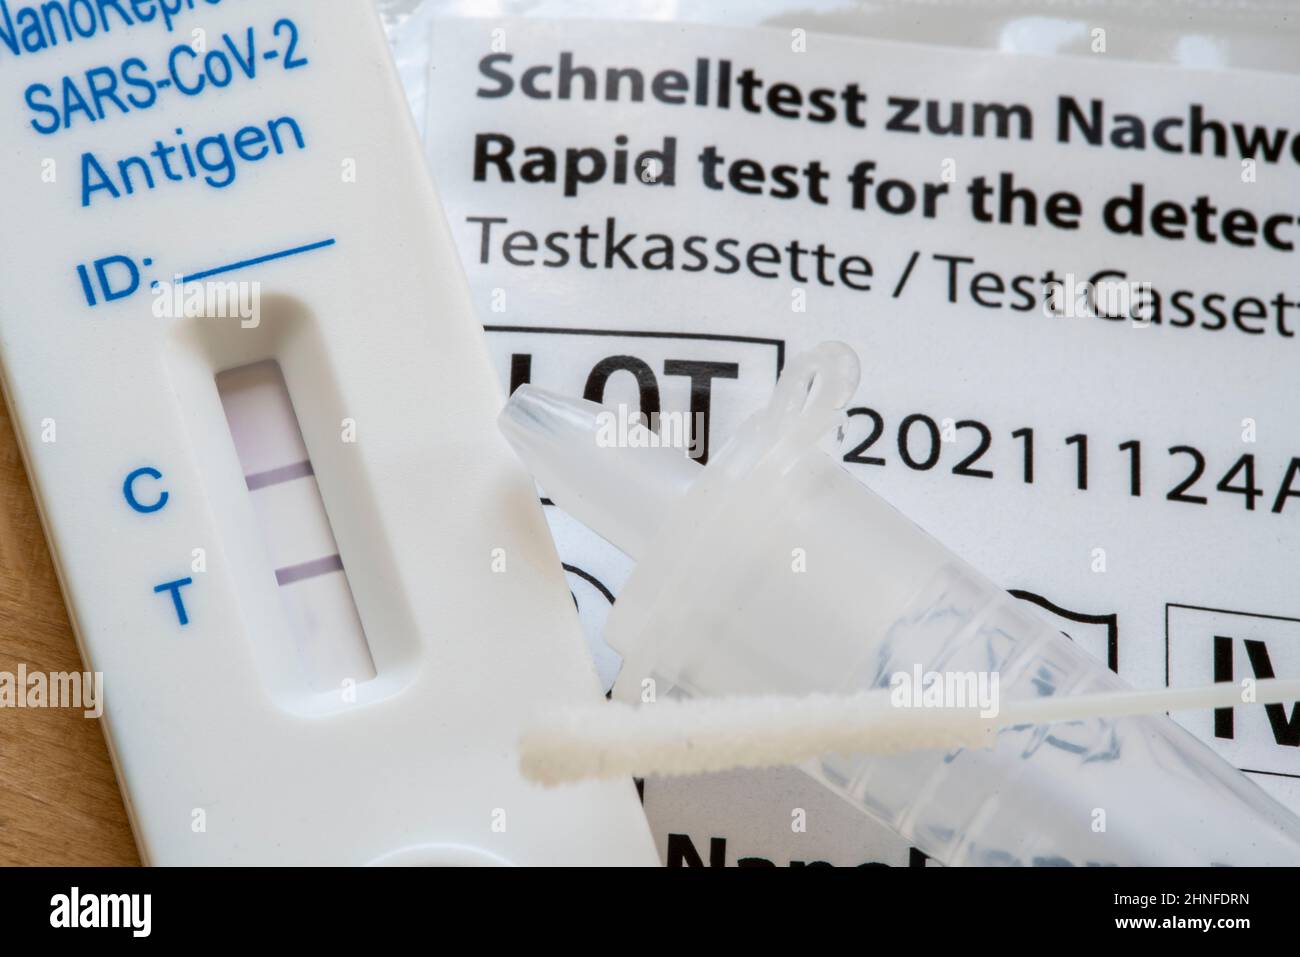 Test rapido positivo per l'antigene corona, test laico, autotest, per l'individuazione dell'infezione da SARS-COV-2, risultato del test positivo, Foto Stock